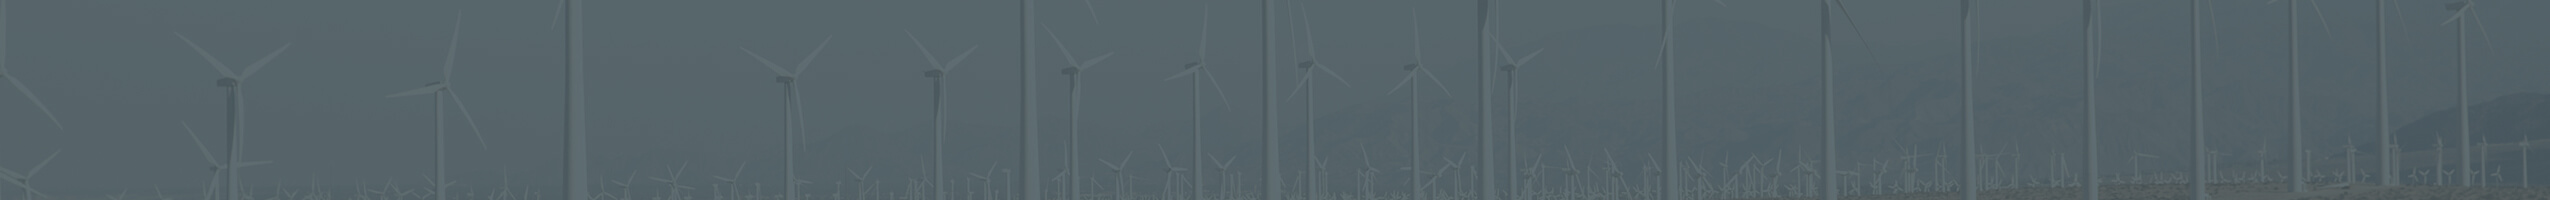 Énergies renouvelables (énergie éolienne, solaire et hydroélectrique)